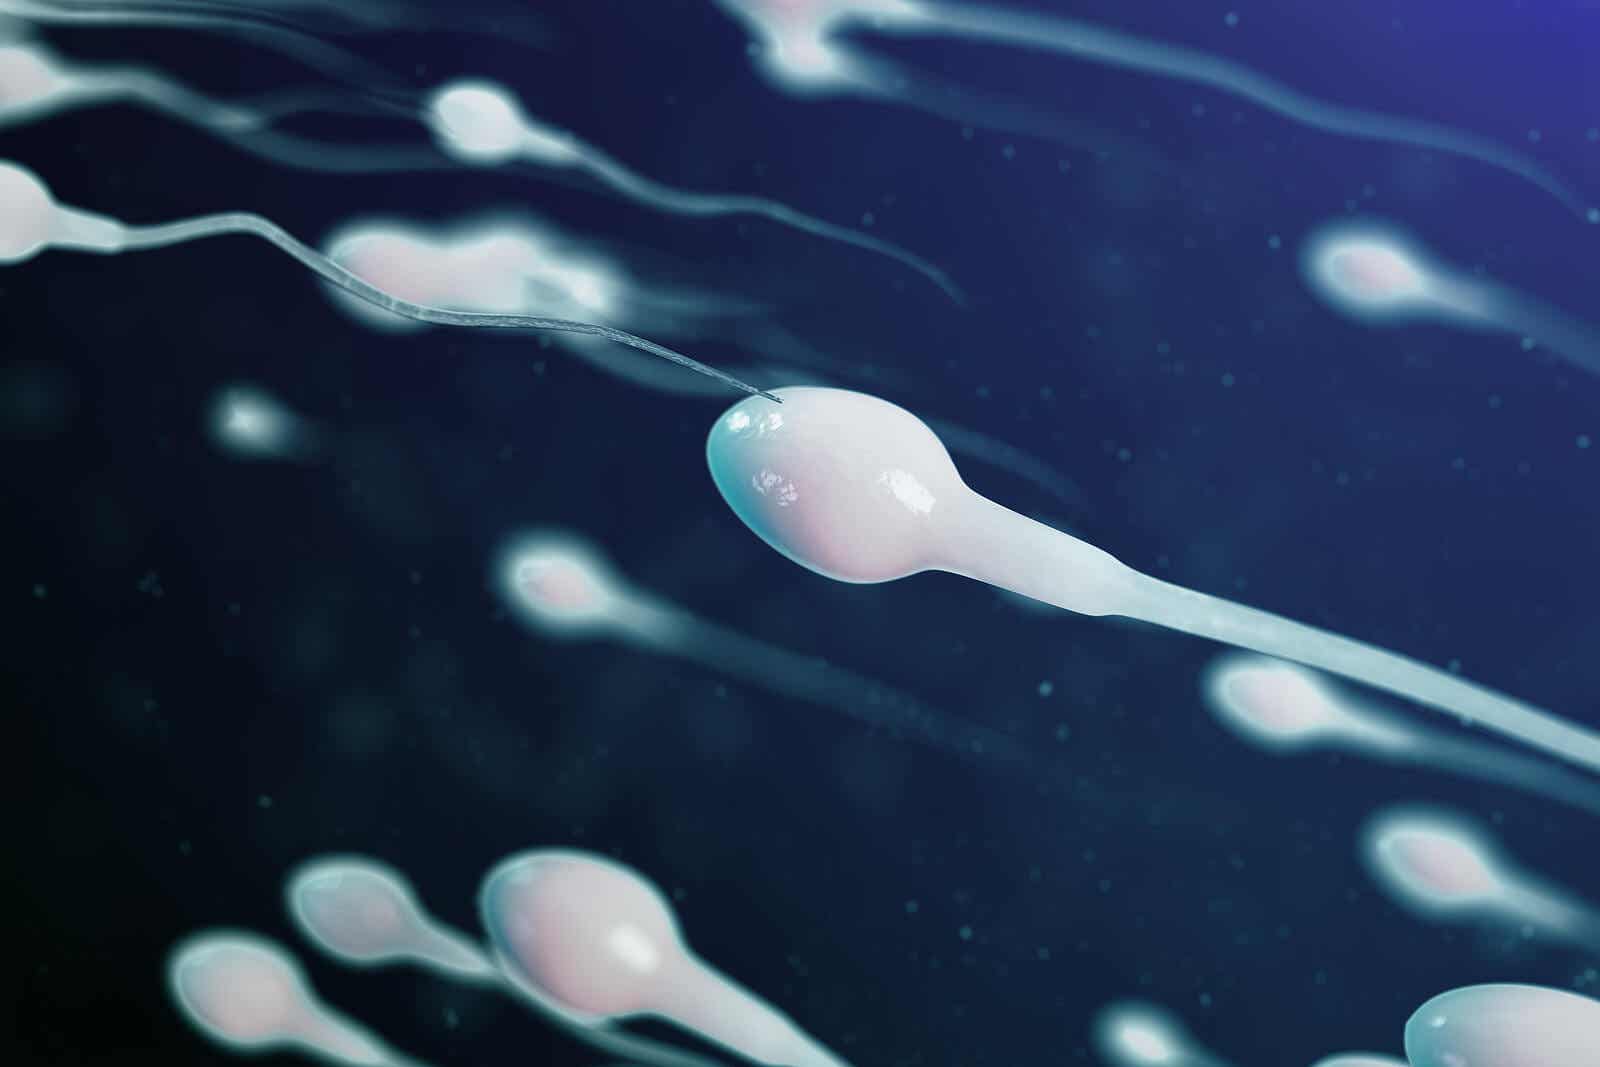 Espermograma para la fertilidad masculina.